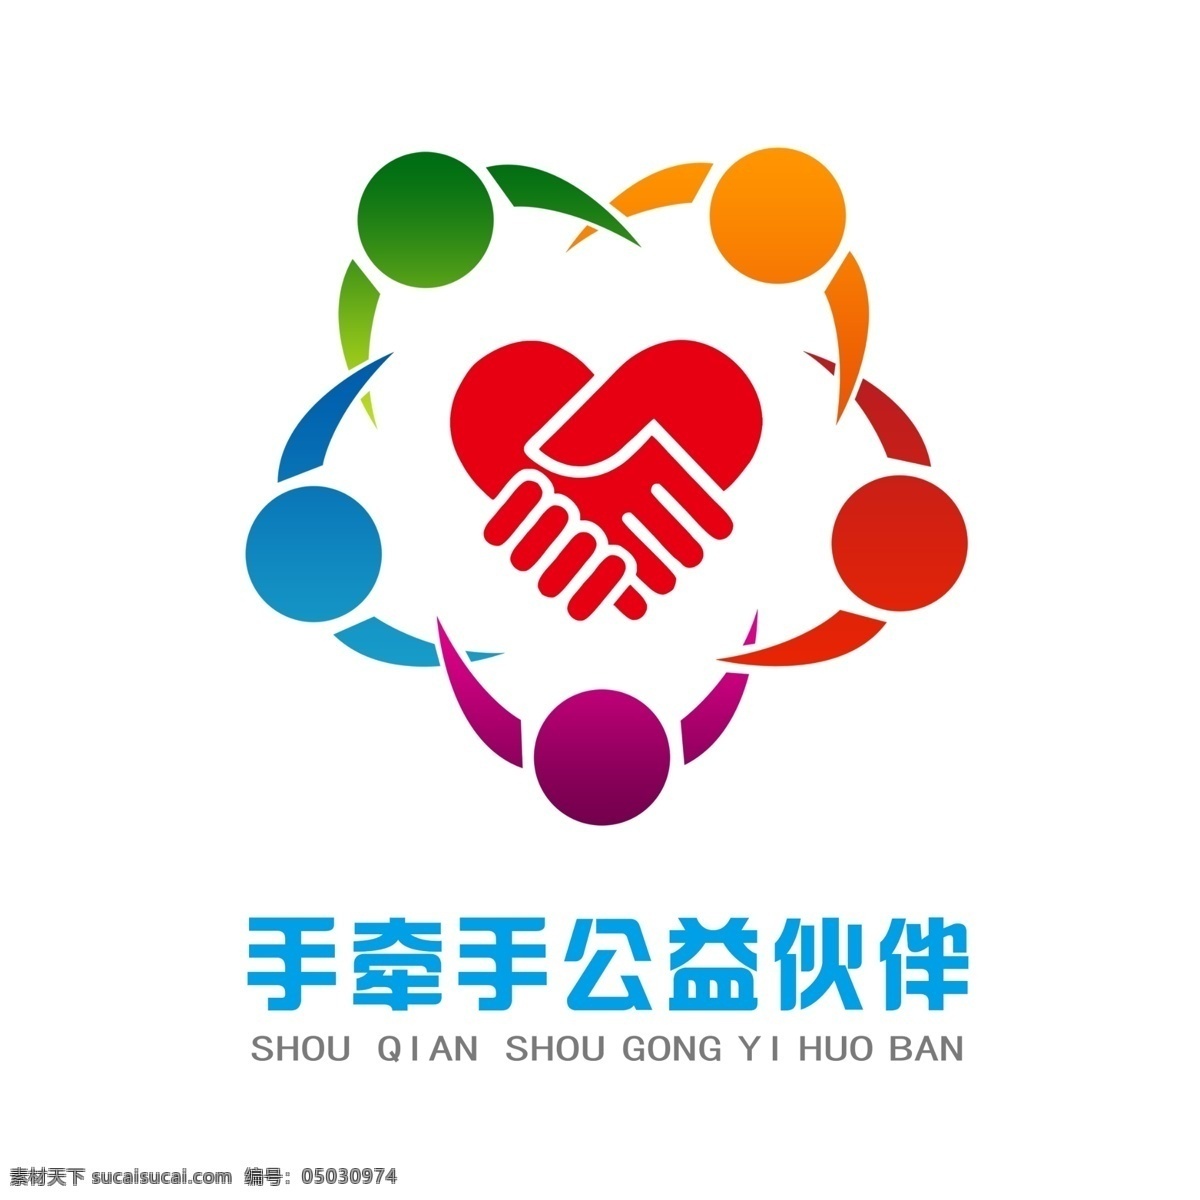 公益伙伴 公益伙伴日 公益日 伙伴日 志愿者 志愿者协会 中国志愿者 青年志愿者 志愿者标志 青年 logo设计